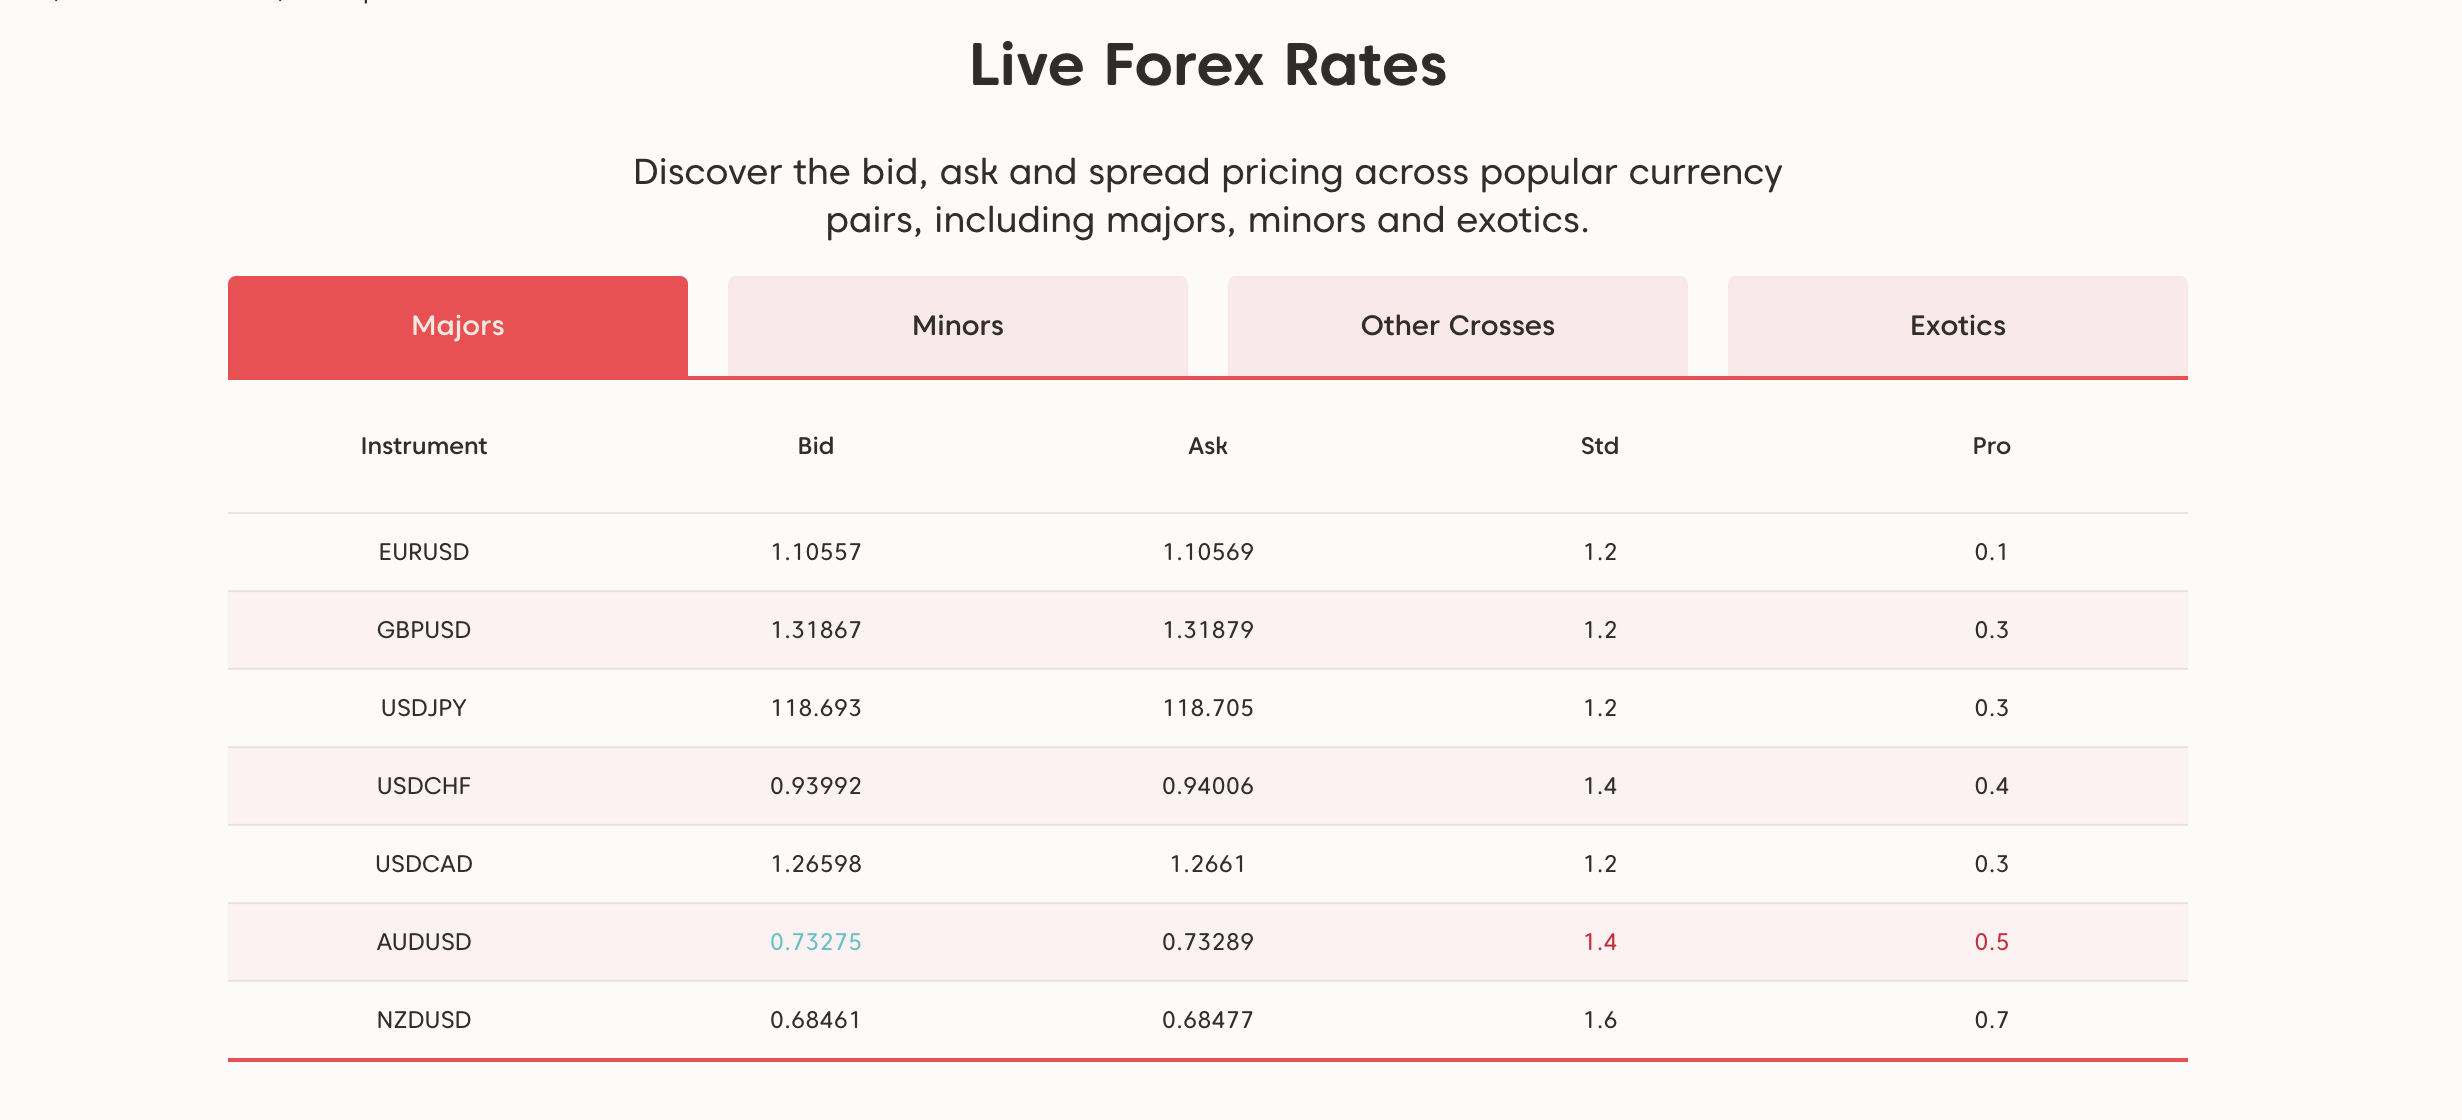 Na AxiTrader możesz zobaczyć dane rynkowe w czasie rzeczywistym, w tym spready.